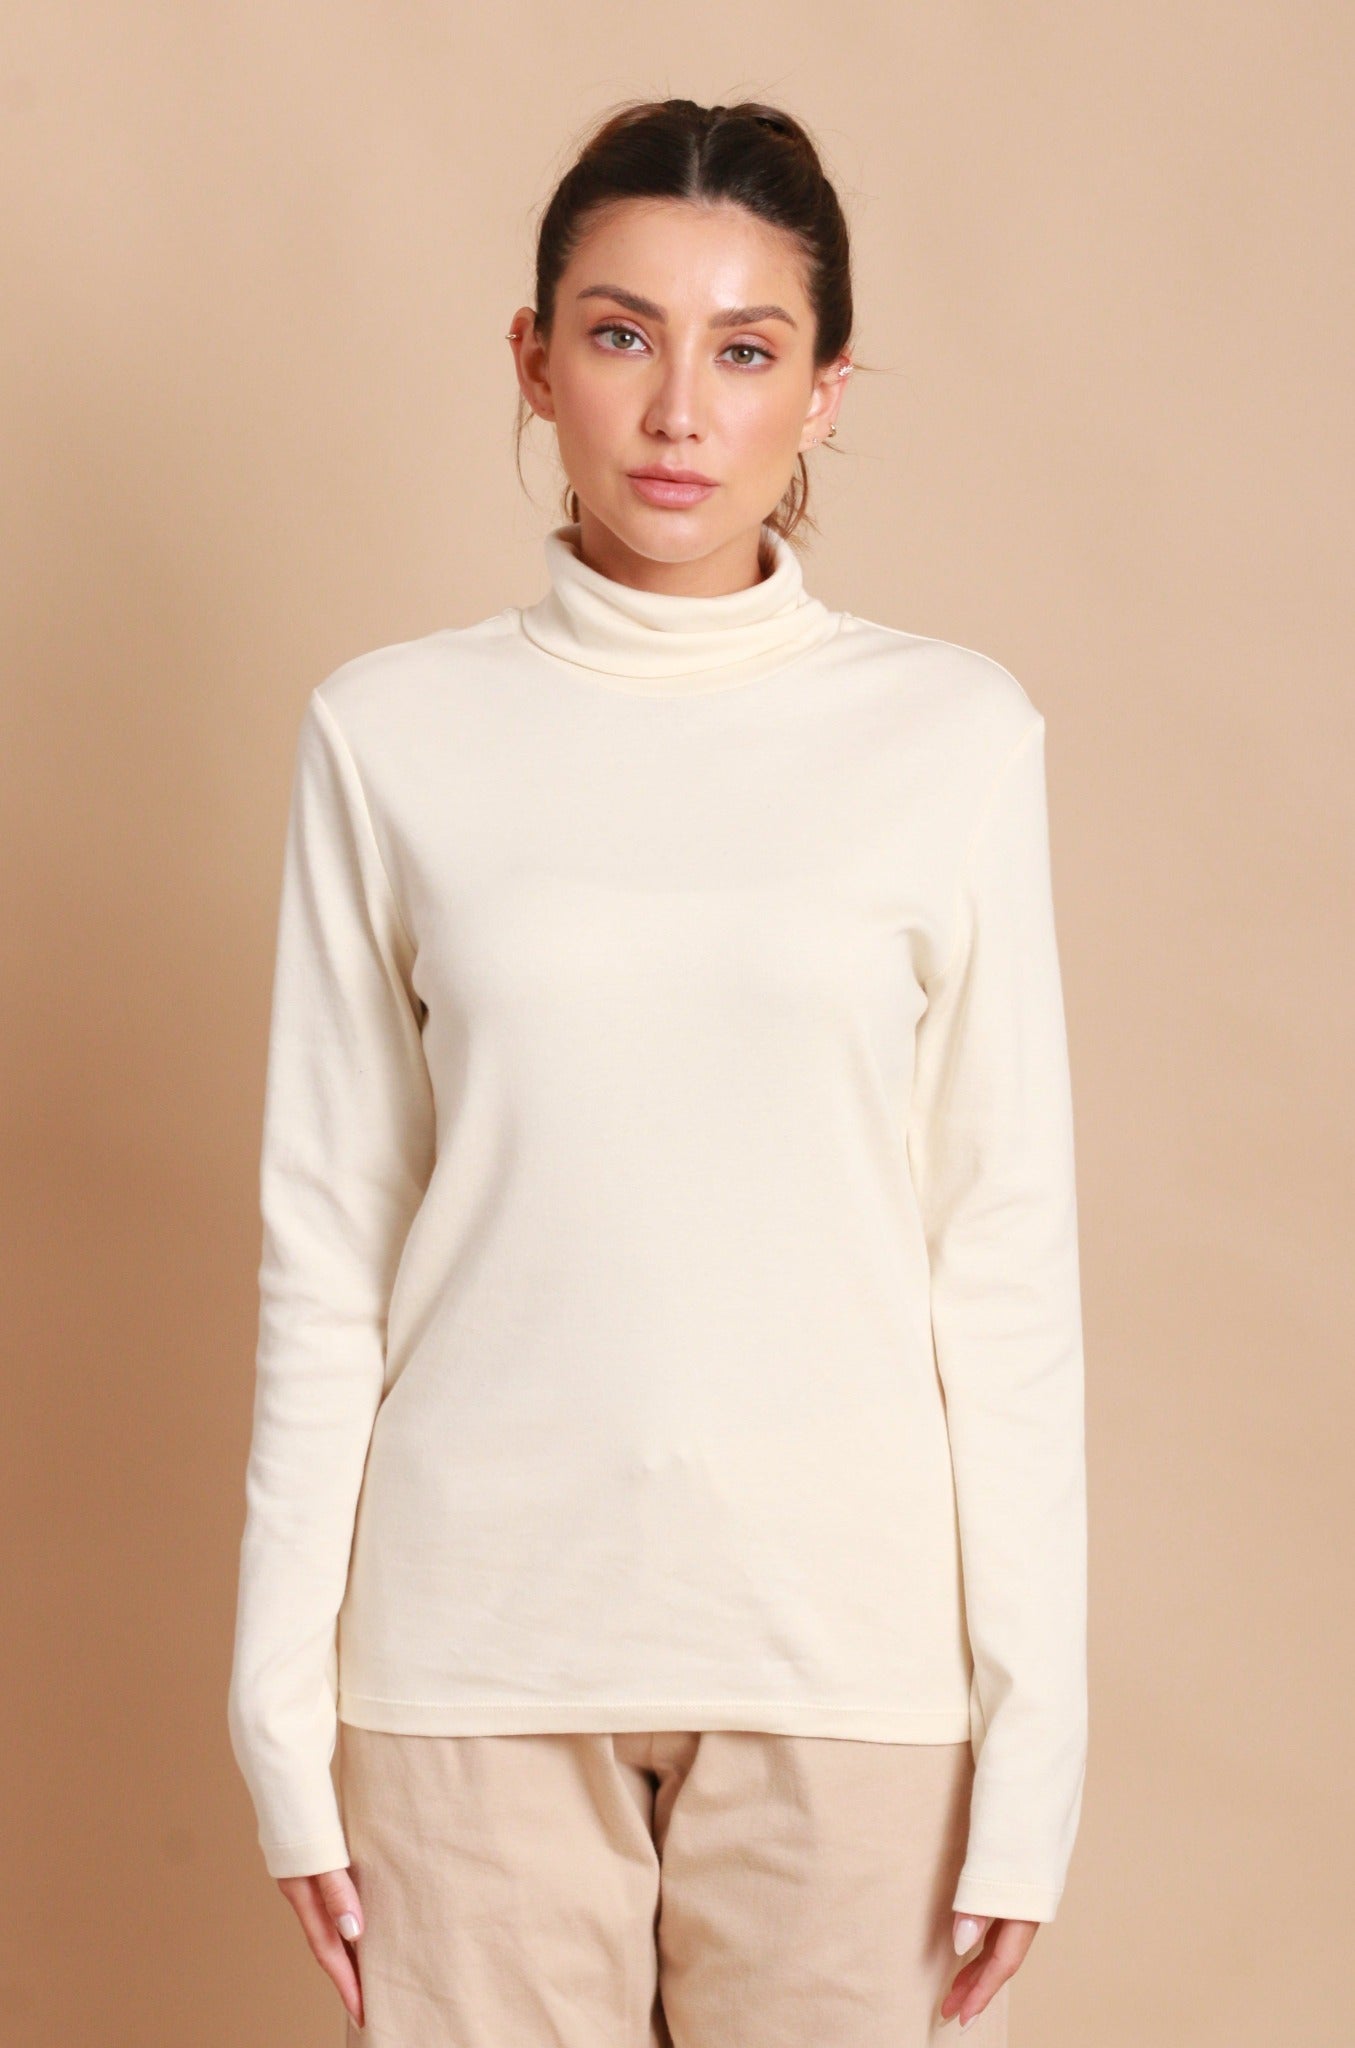 Women's Merino Tee Long Sleeve - Sous-vêtement thermique femme